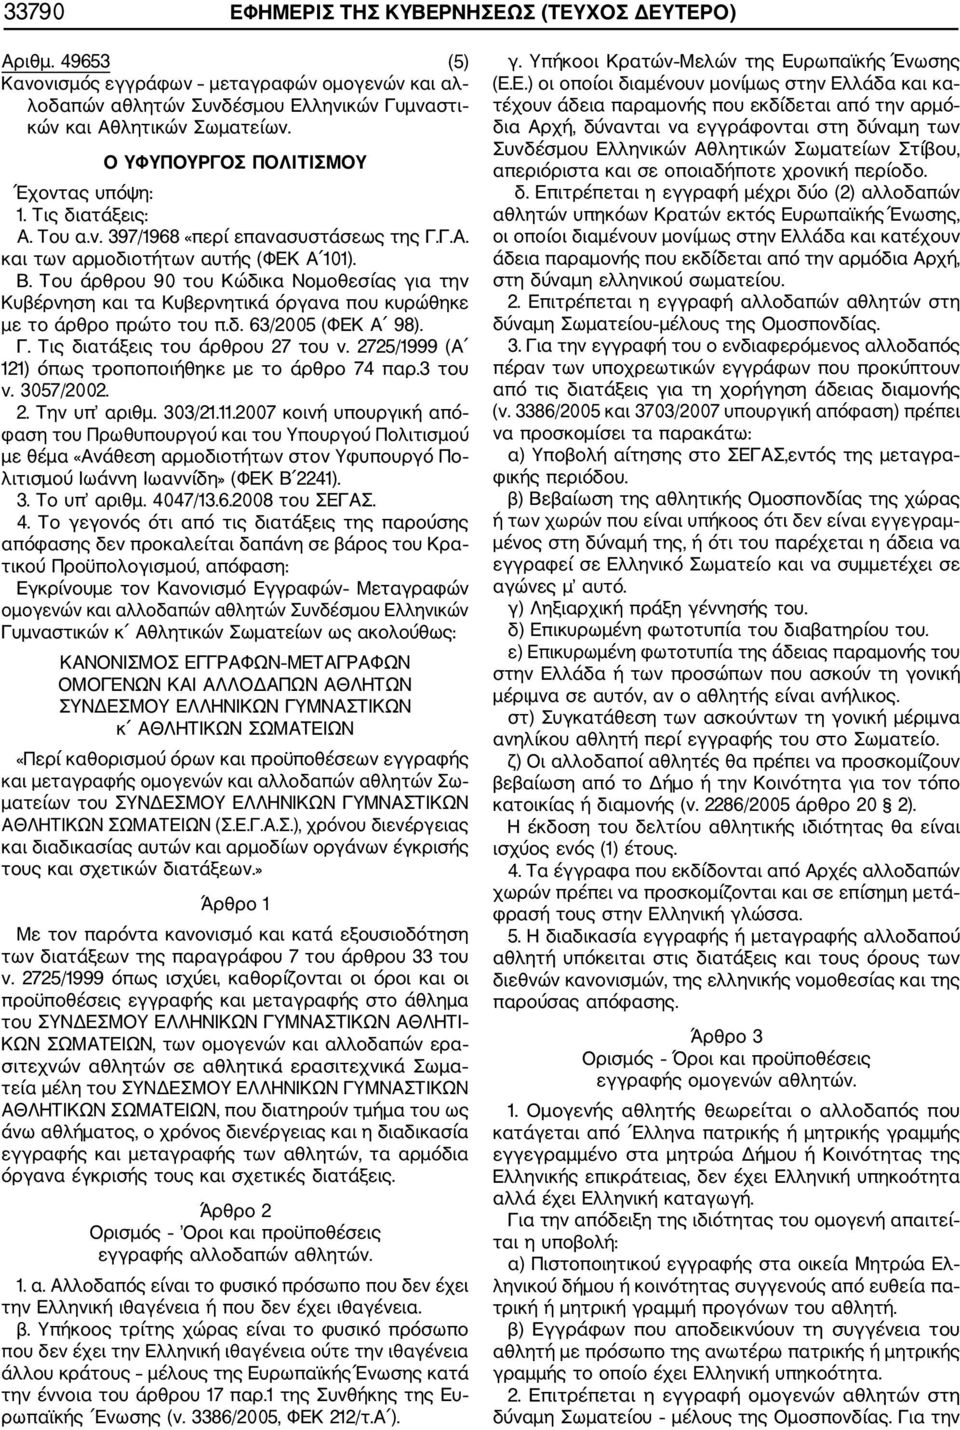 Του άρθρου 90 του Κώδικα Νομοθεσίας για την Κυβέρνηση και τα Κυβερνητικά όργανα που κυρώθηκε με το άρθρο πρώτο του π.δ. 63/2005 (ΦΕΚ Α 98). Γ. Τις διατάξεις του άρθρου 27 του ν.